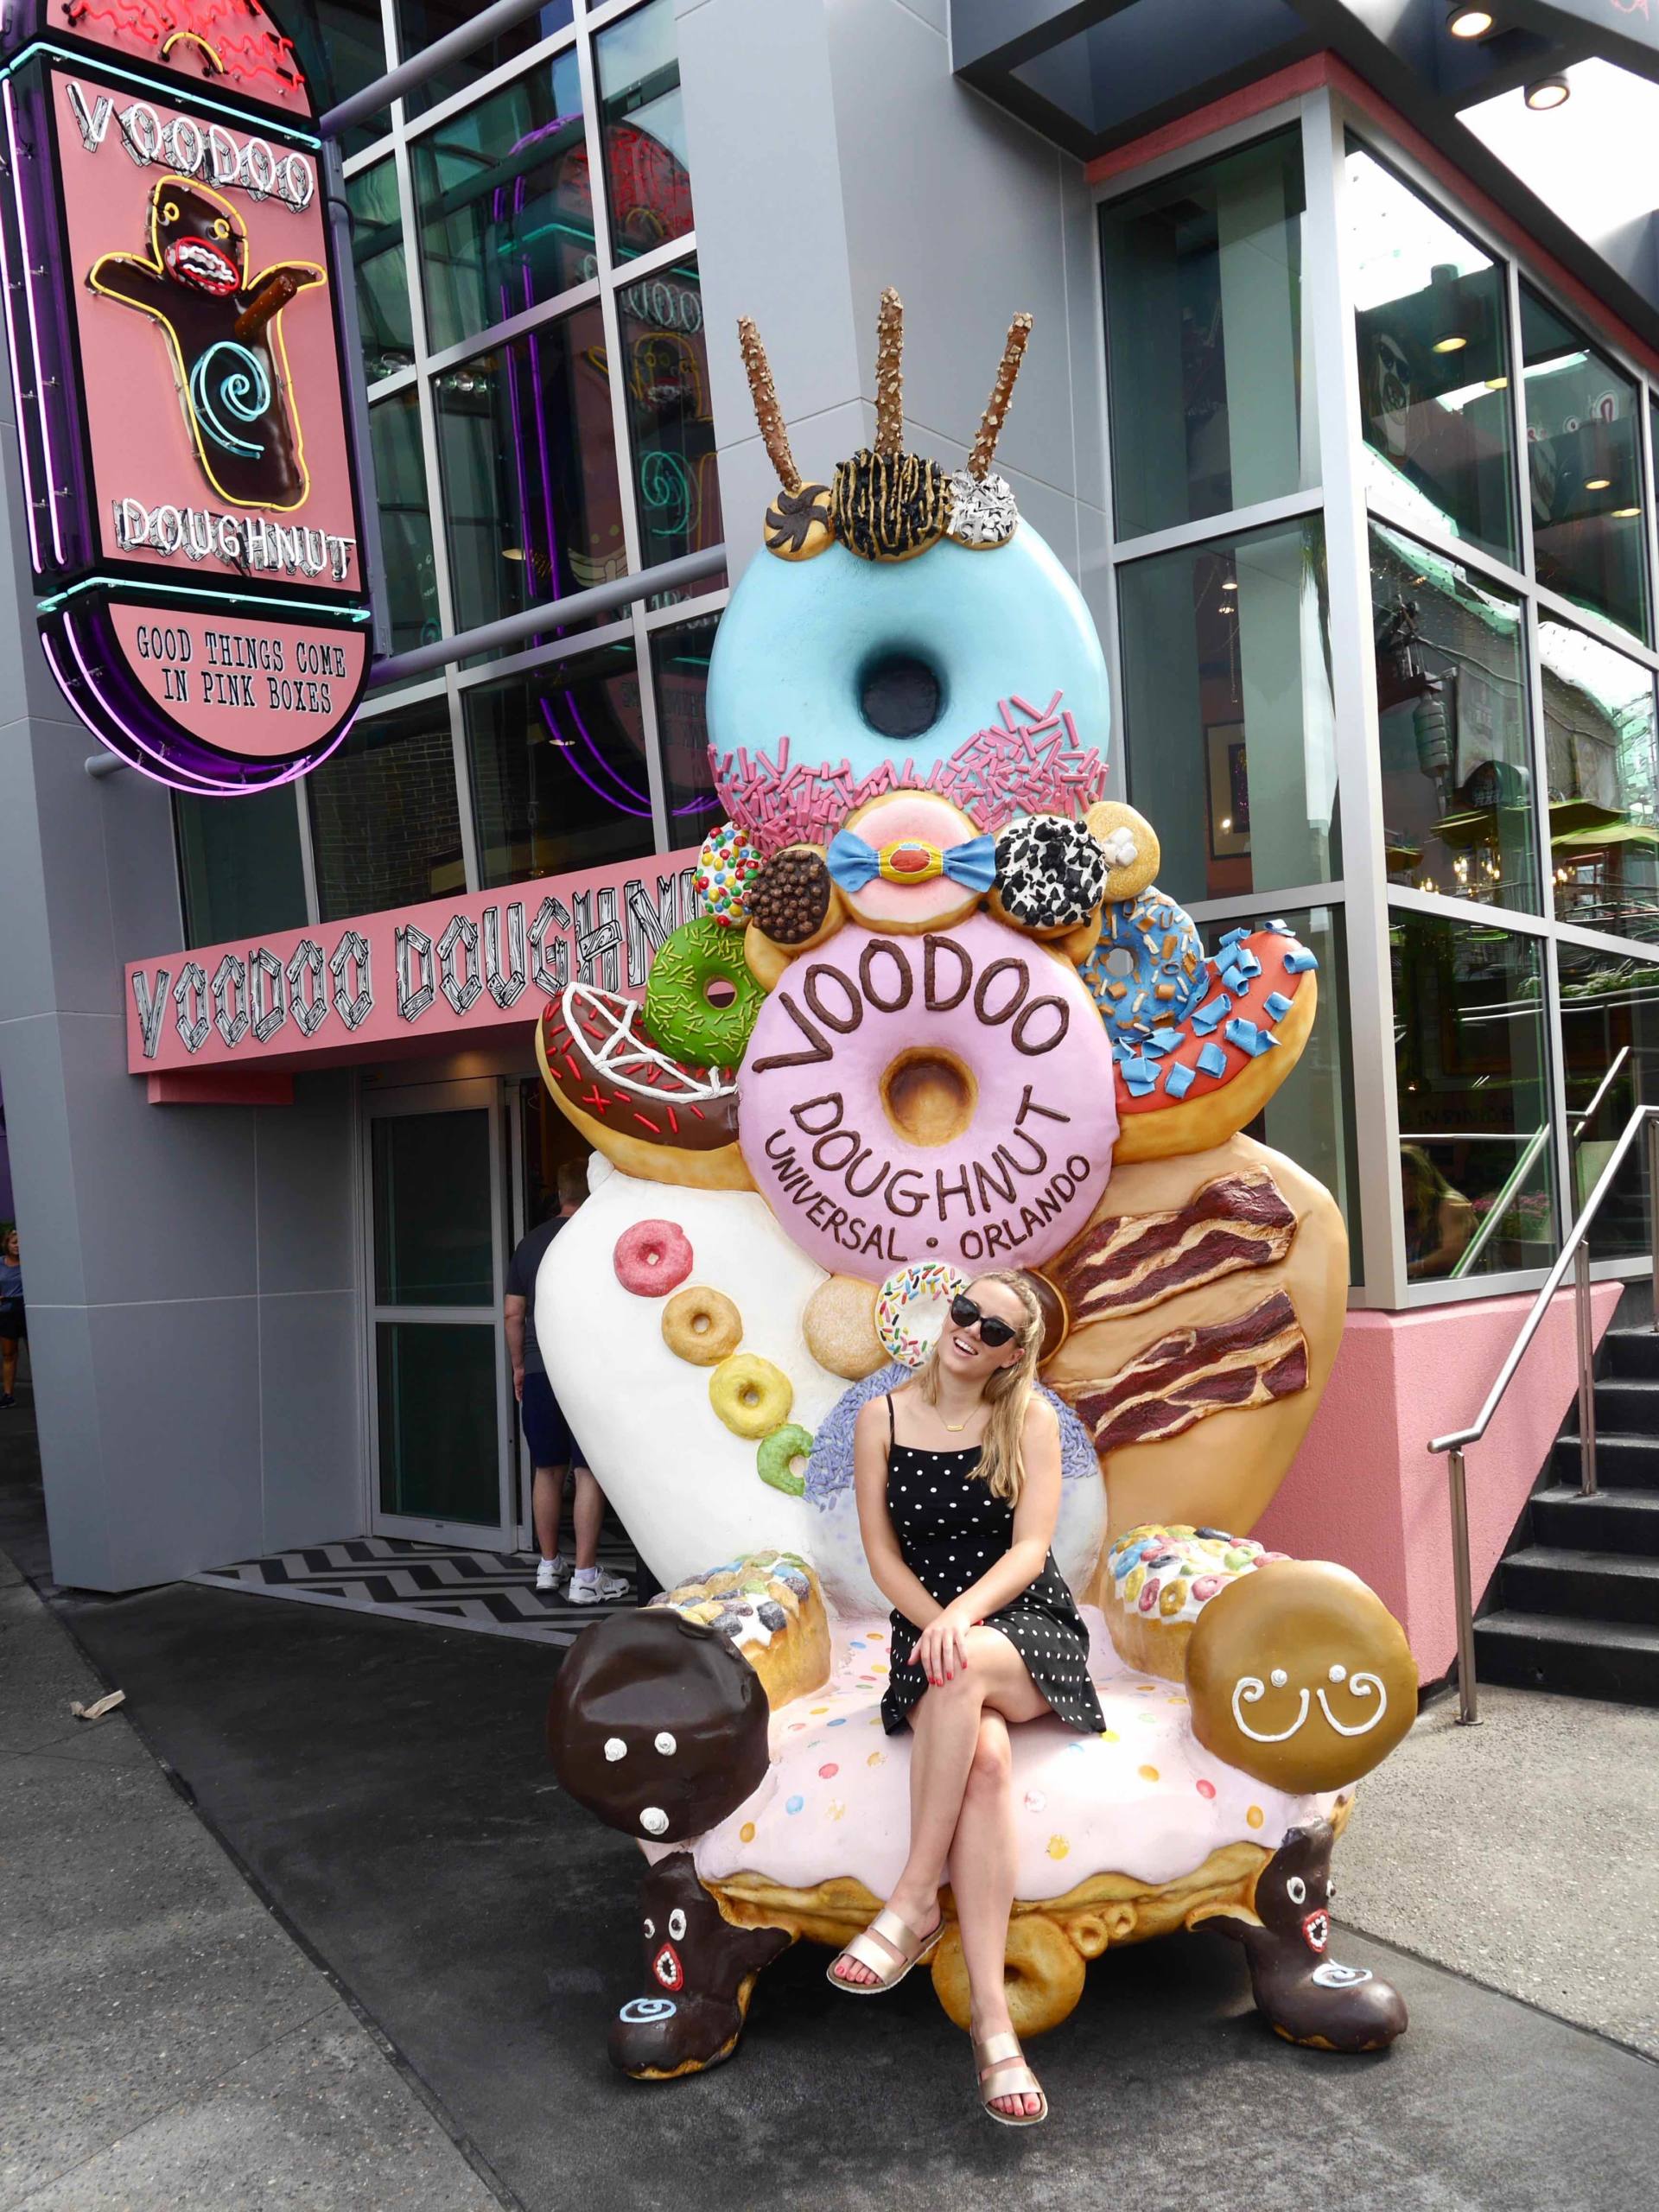 Paseo por la ciudad de Voodoo Donuts Orlando Florida | El viajero